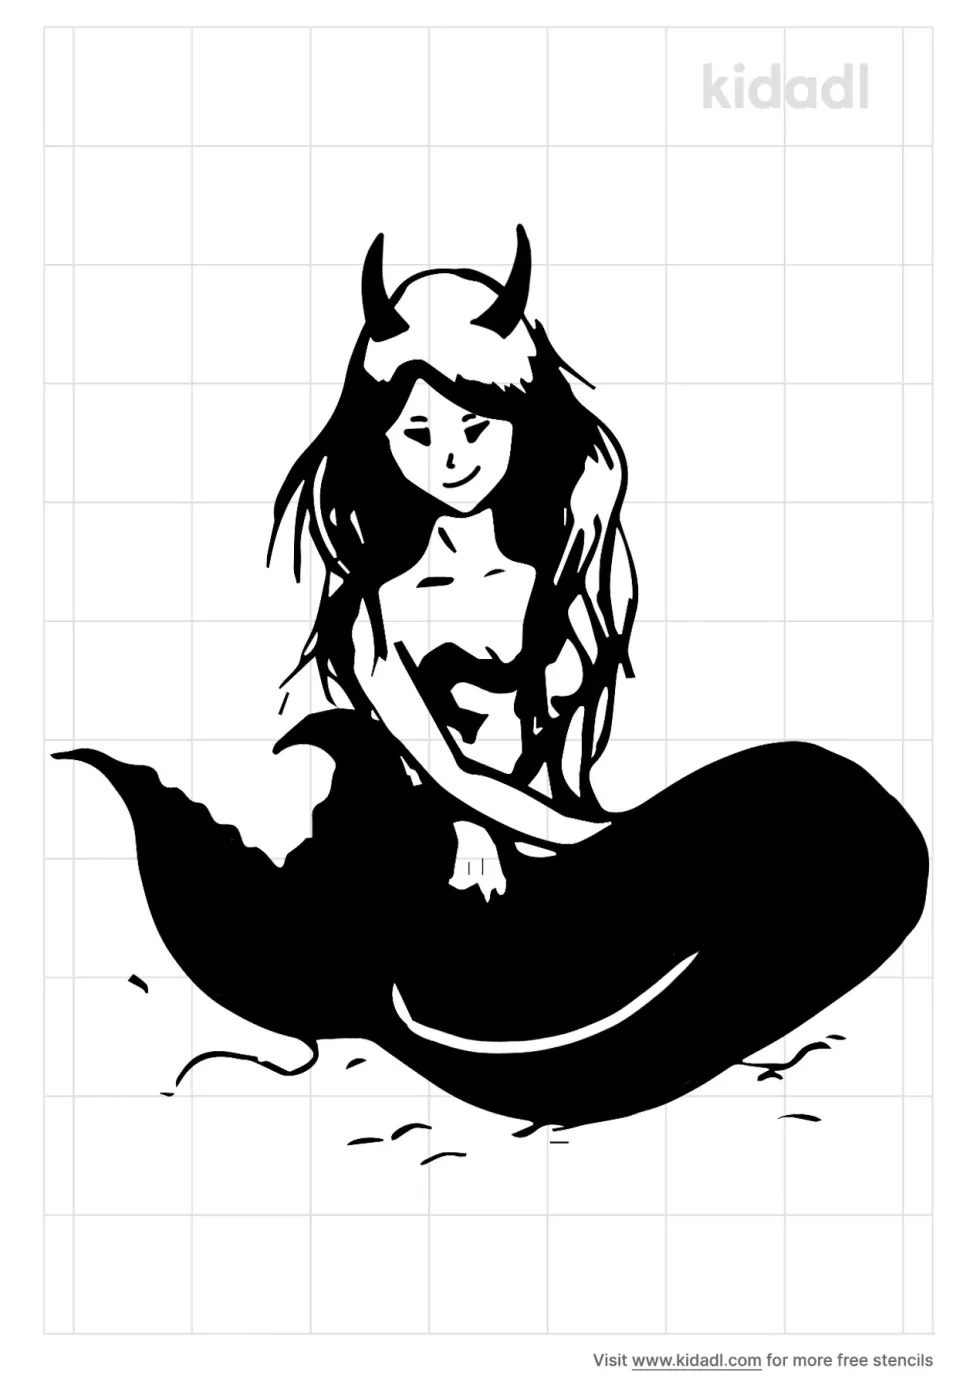 Evil Mermaid